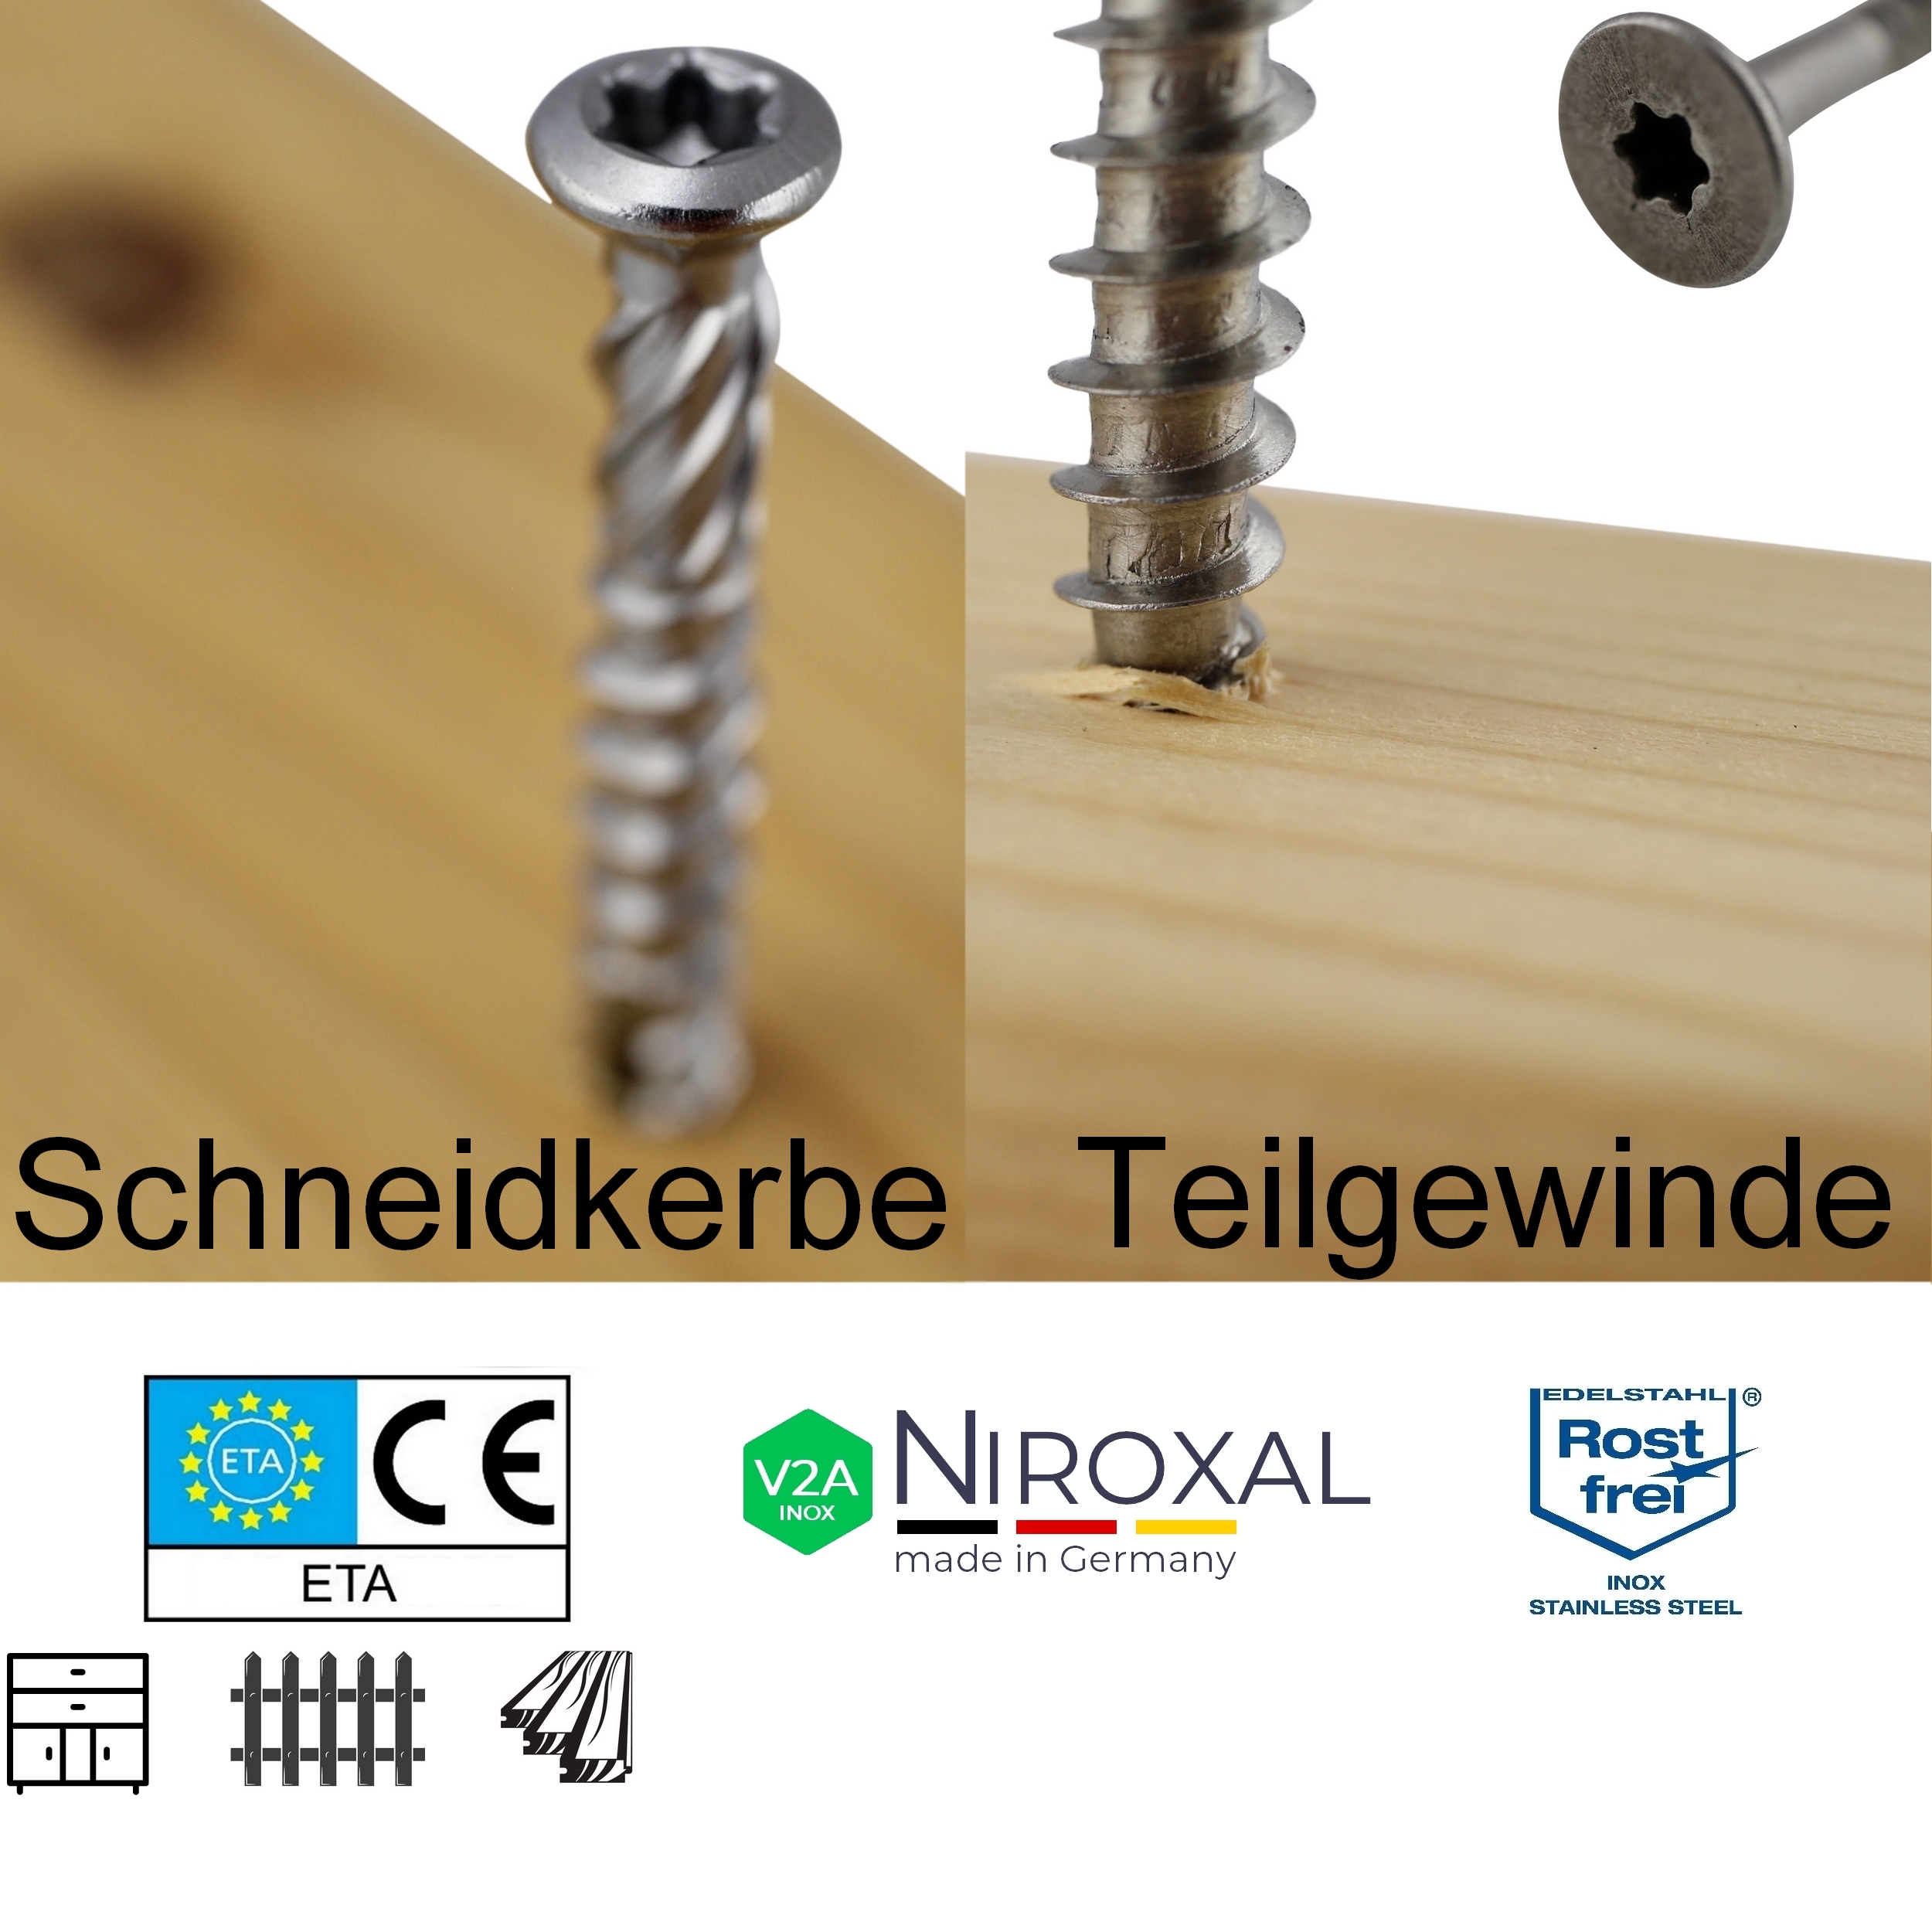 Niroxal Edelstahl Schrauben SPARSET TORX Senkkopf UND Schneidkerbe Schraube  für Holz - Niroxal Edelstahl made in Germany